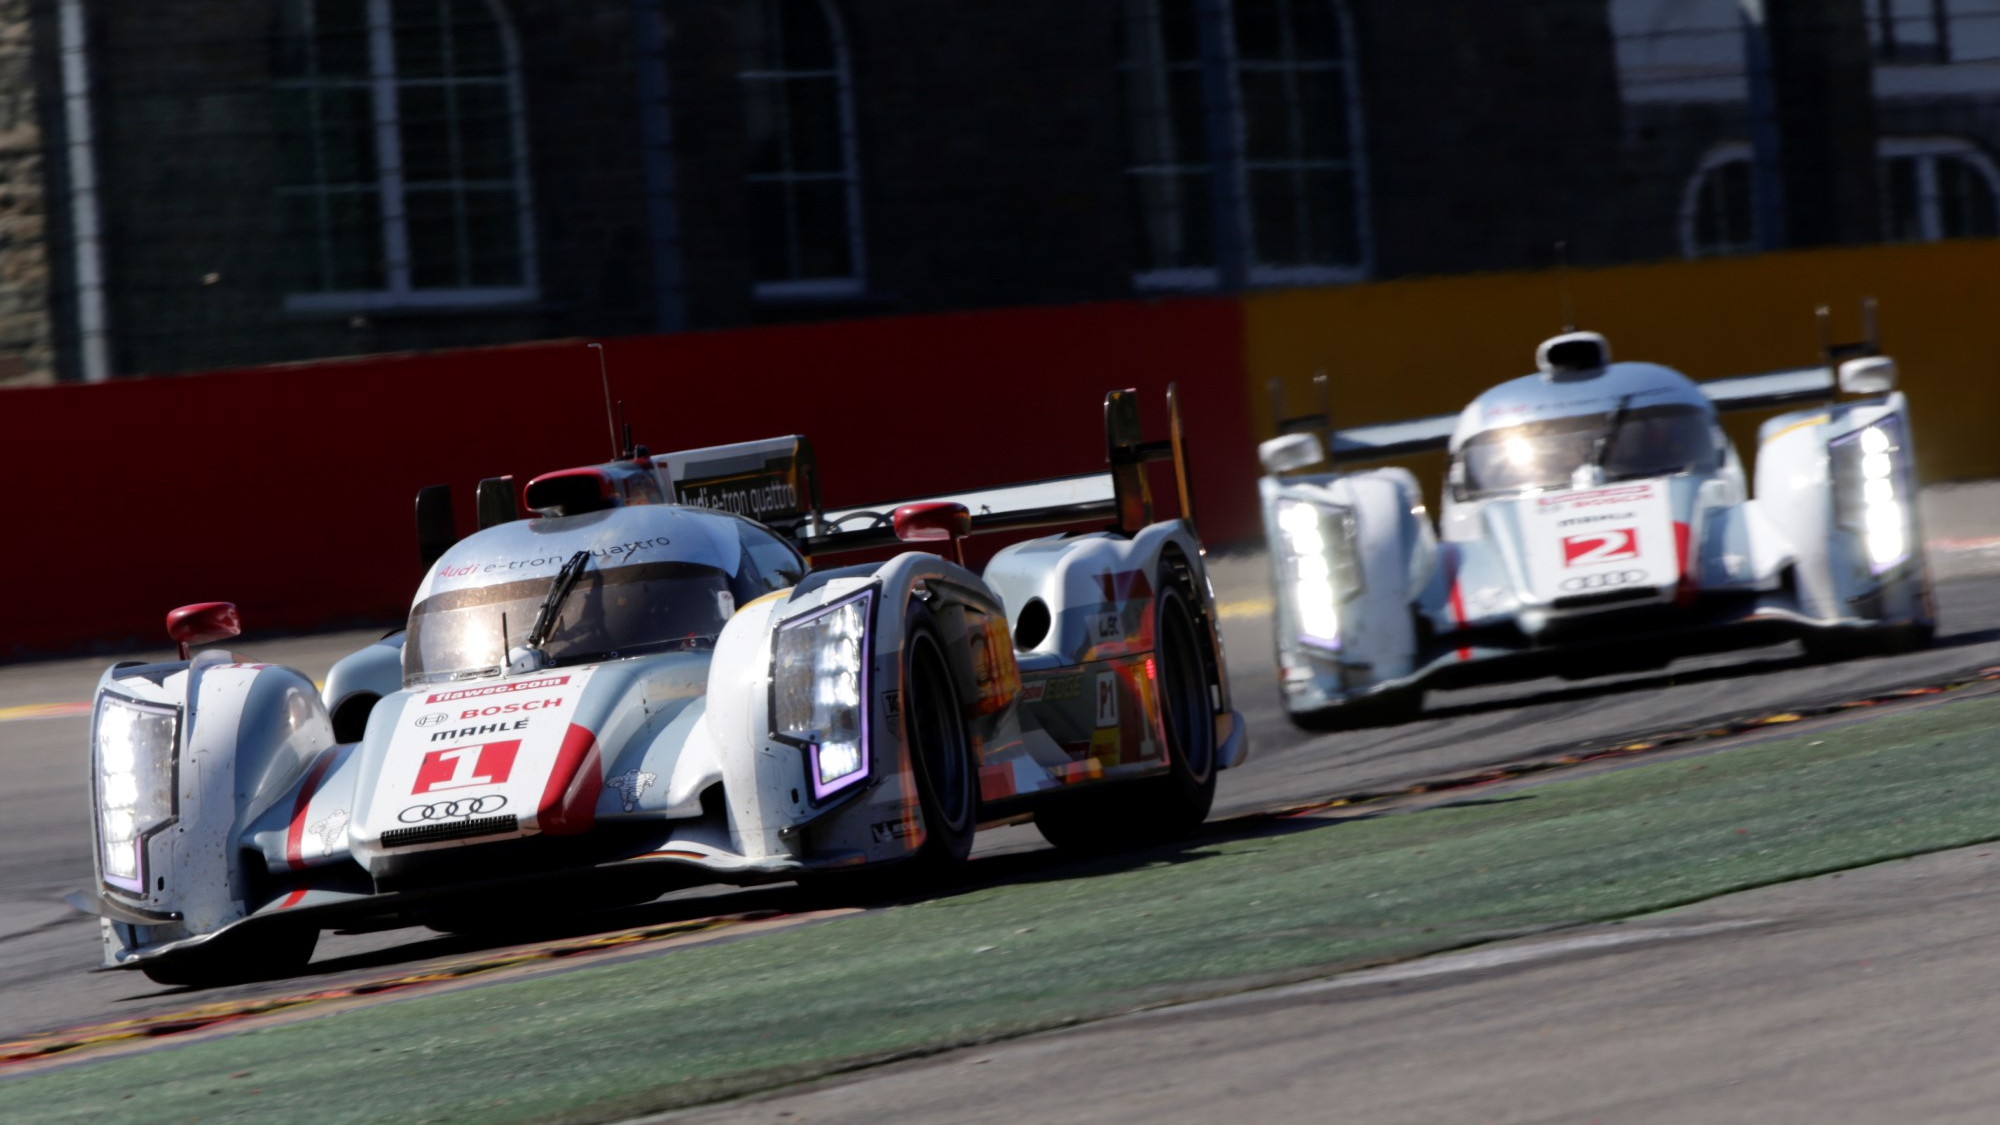 Audi Le Mans prototypes, lightness through carbon fiber